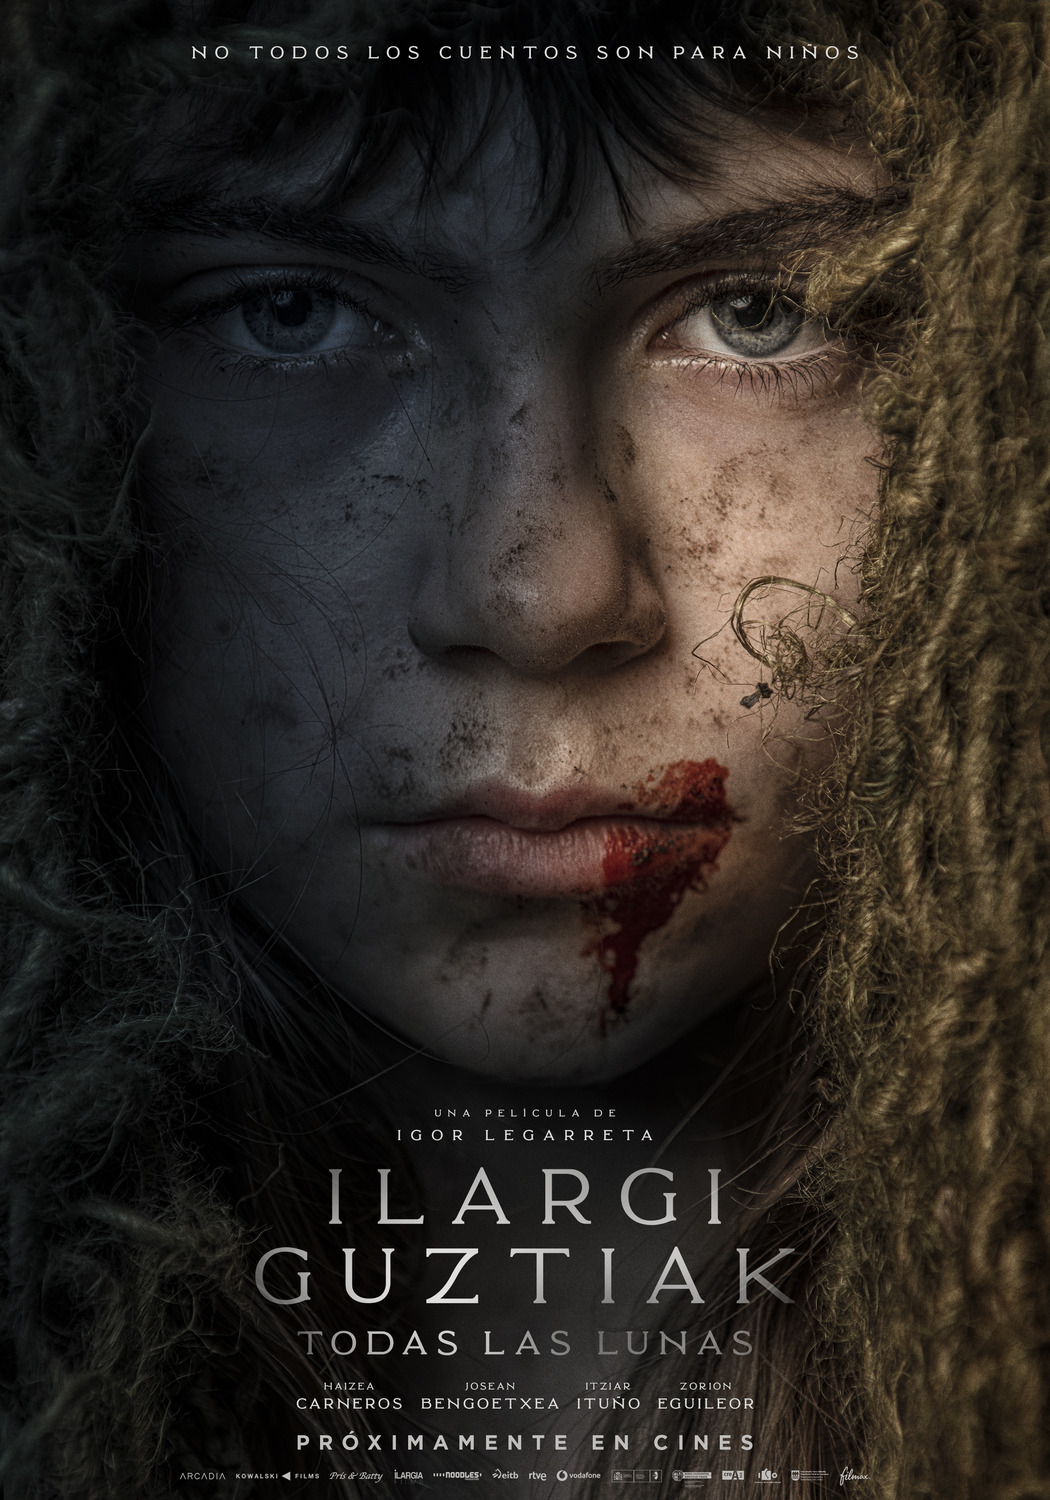 Extra Large Movie Poster Image for Ilargi Guztiak (#1 of 2)